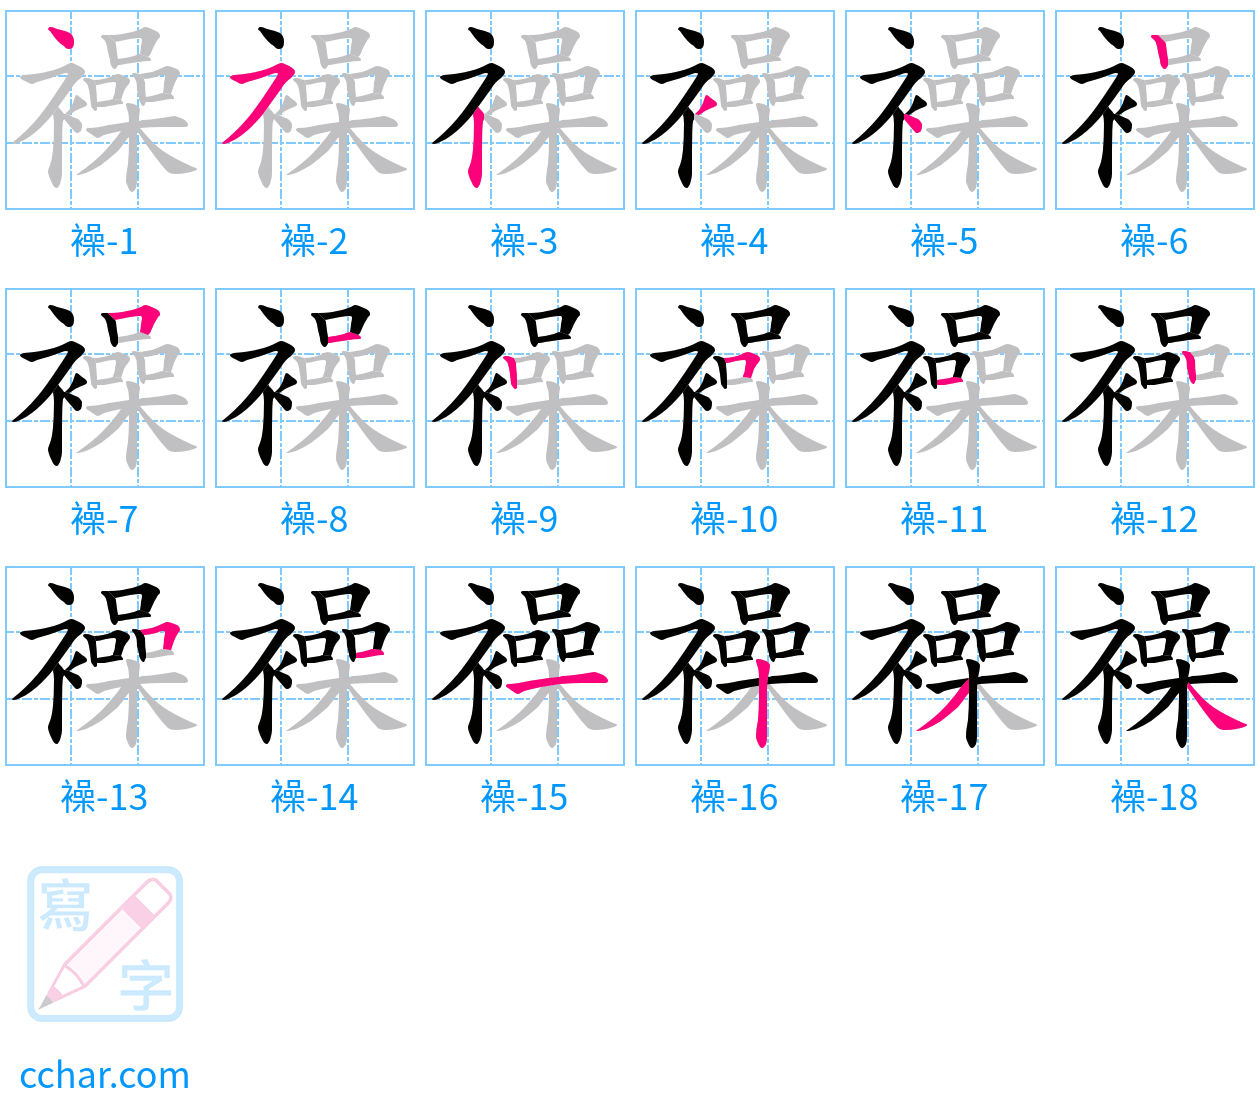 襙 stroke order step-by-step diagram